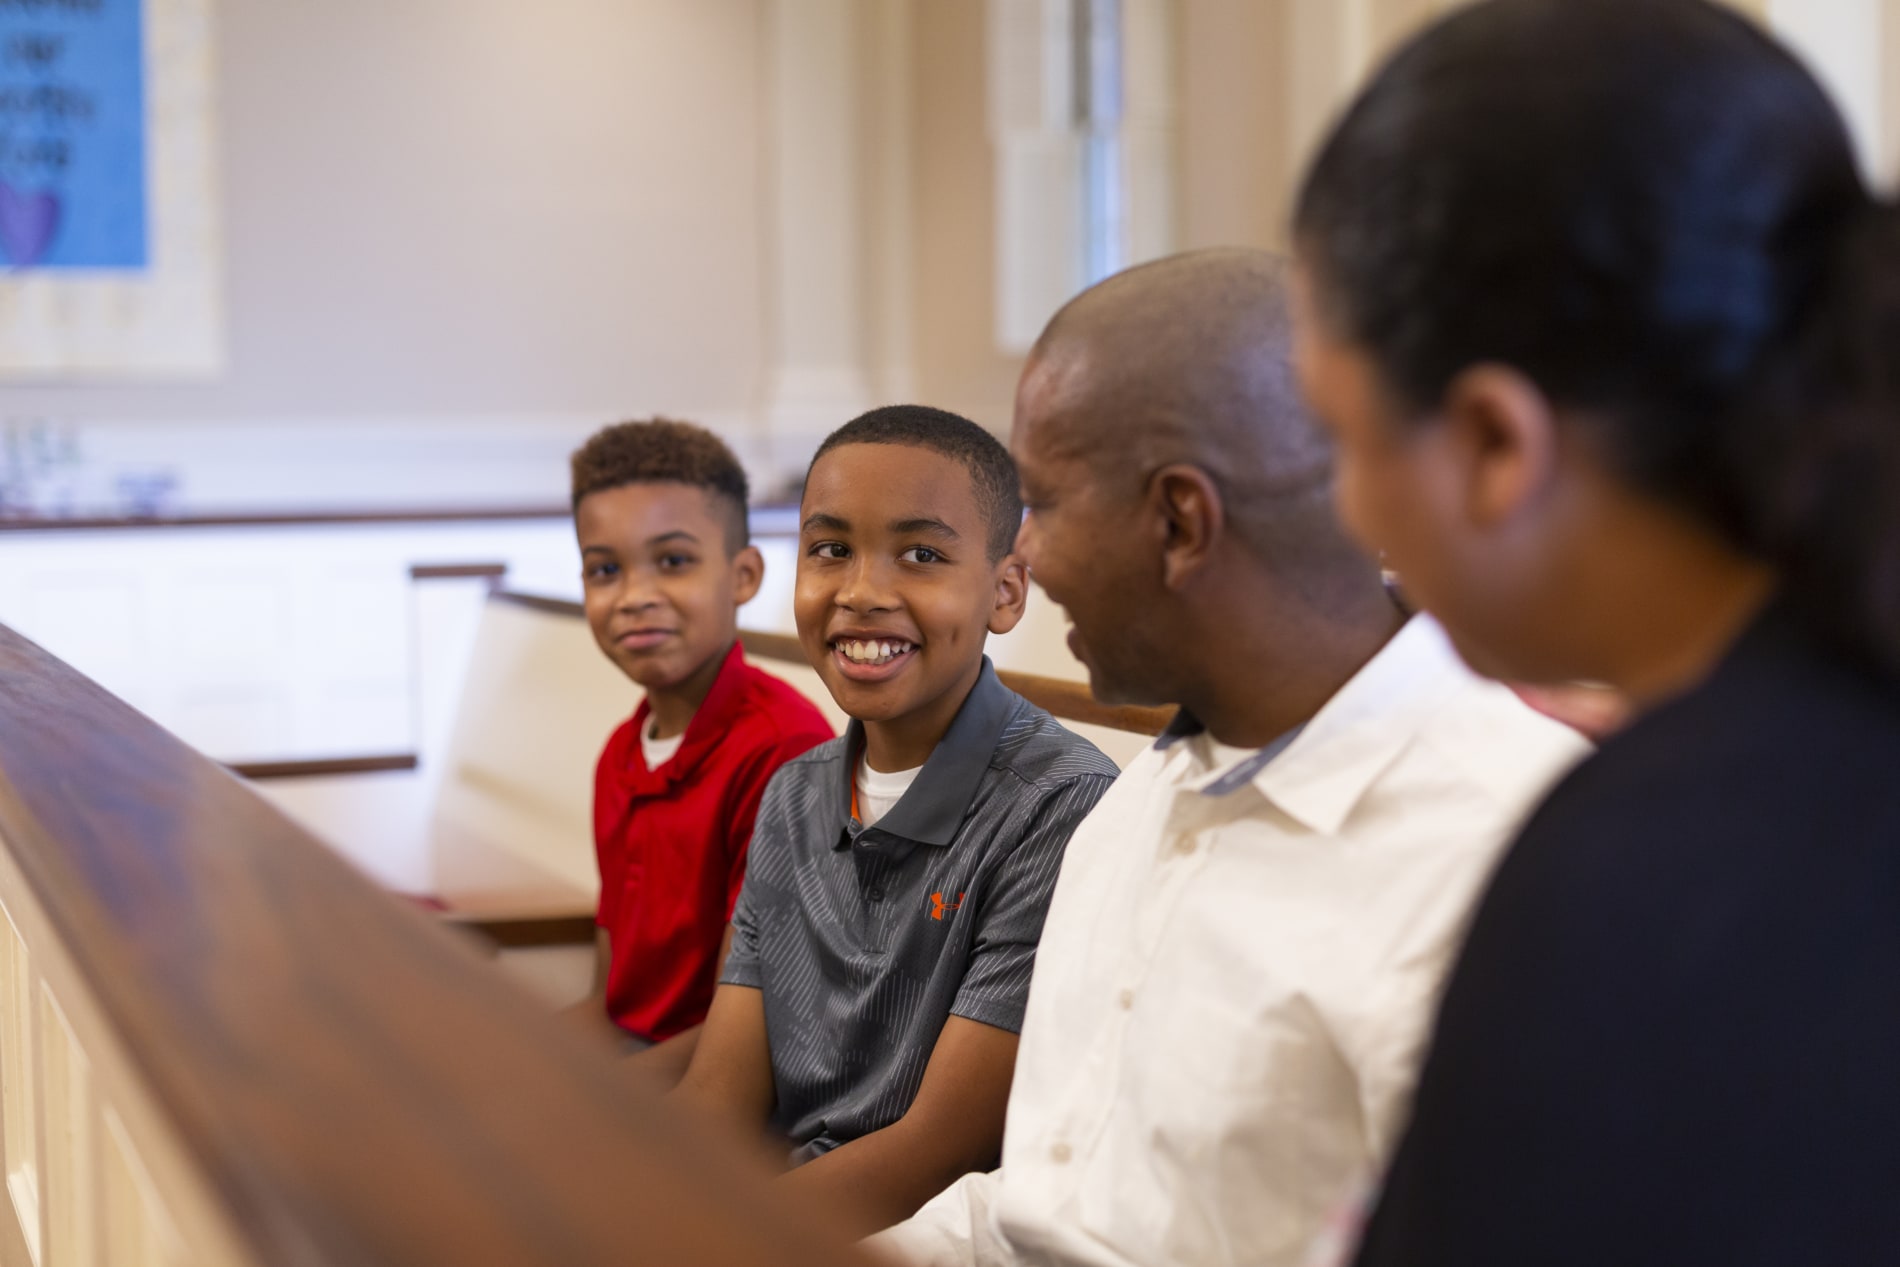 Family in pew in church